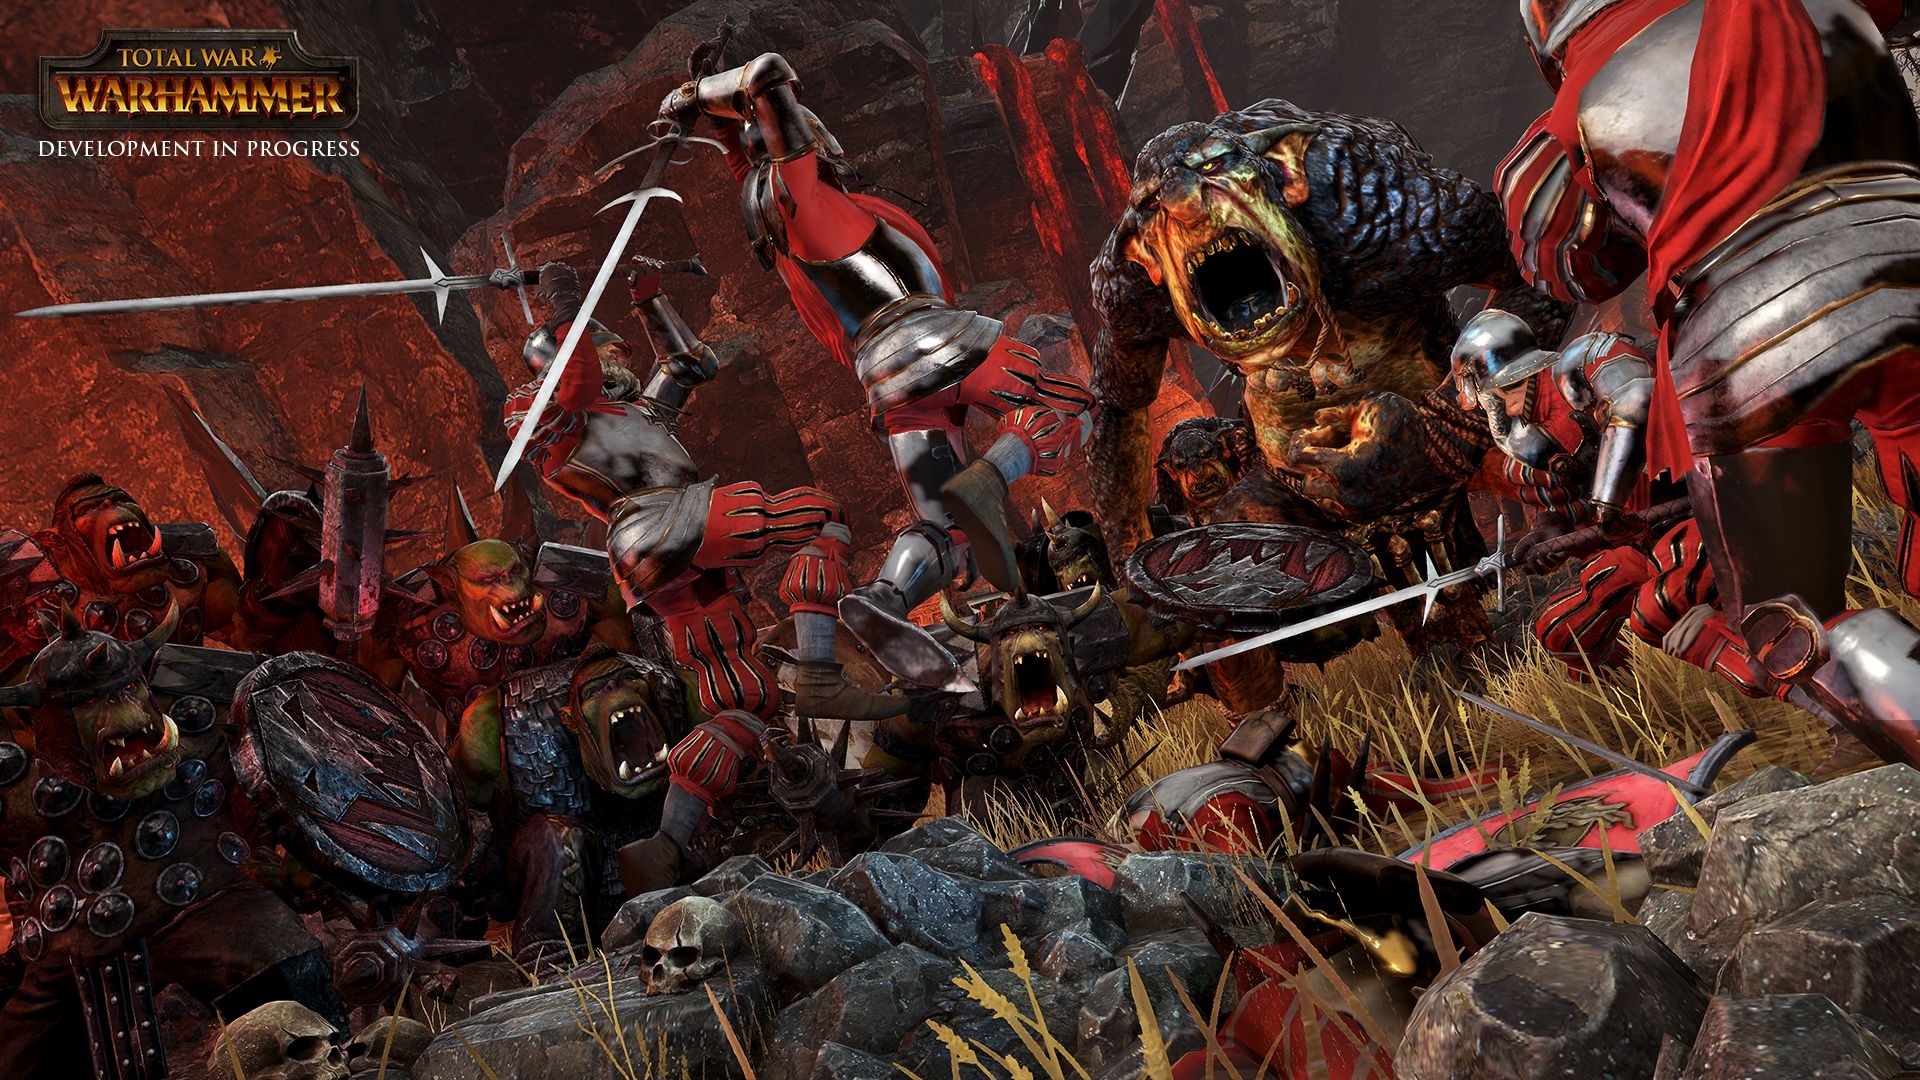 Total War: Warhammer, Orcs, Fantasy Battle, Warhammer, PC gaming Wallpaper